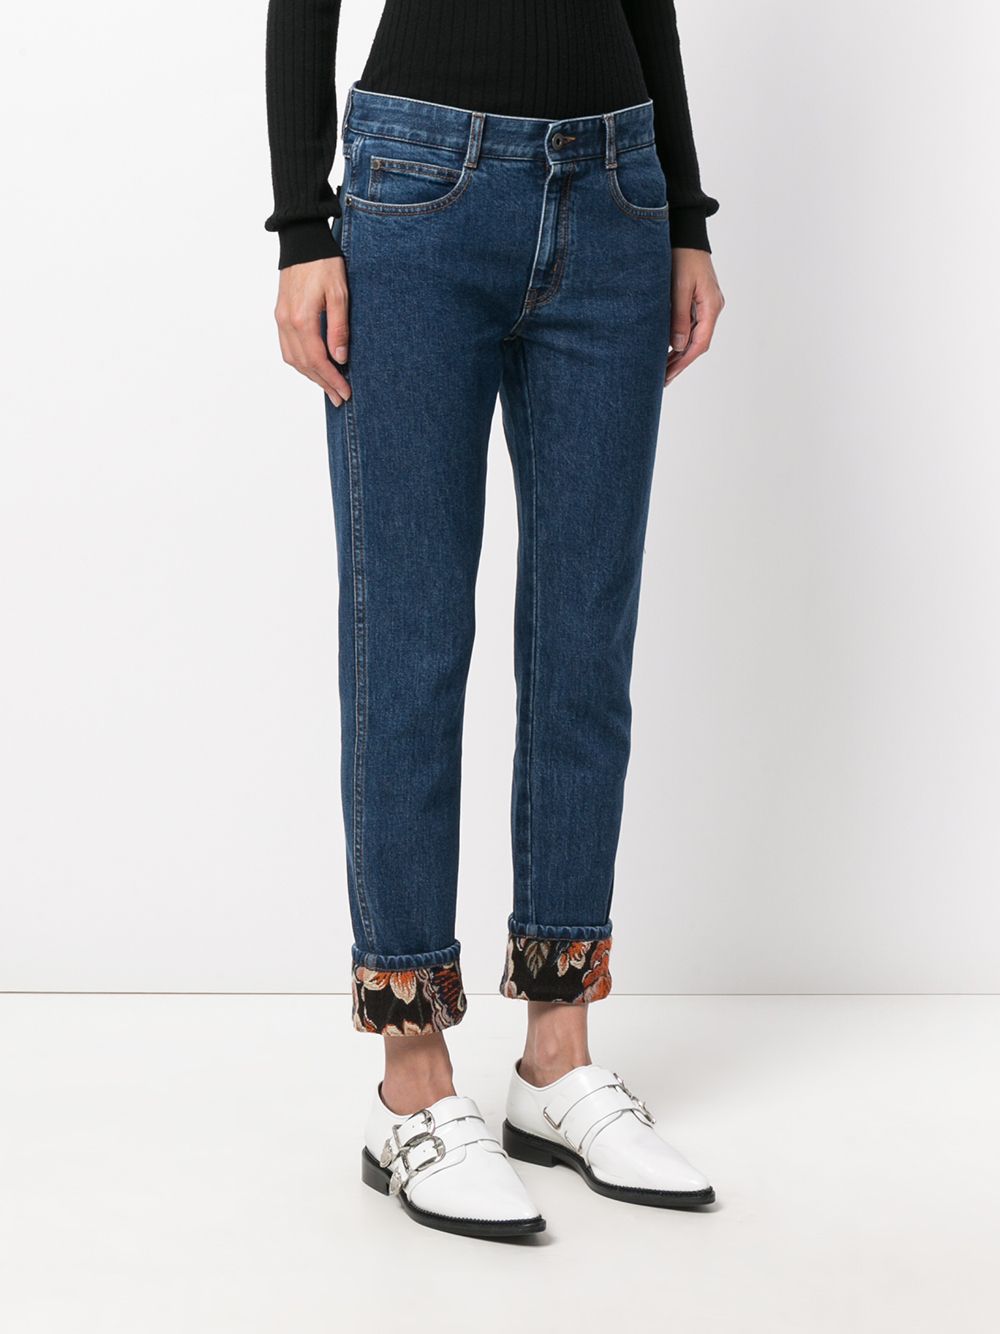 фото Stella McCartney джинсы с манжетами с цветочным принтом